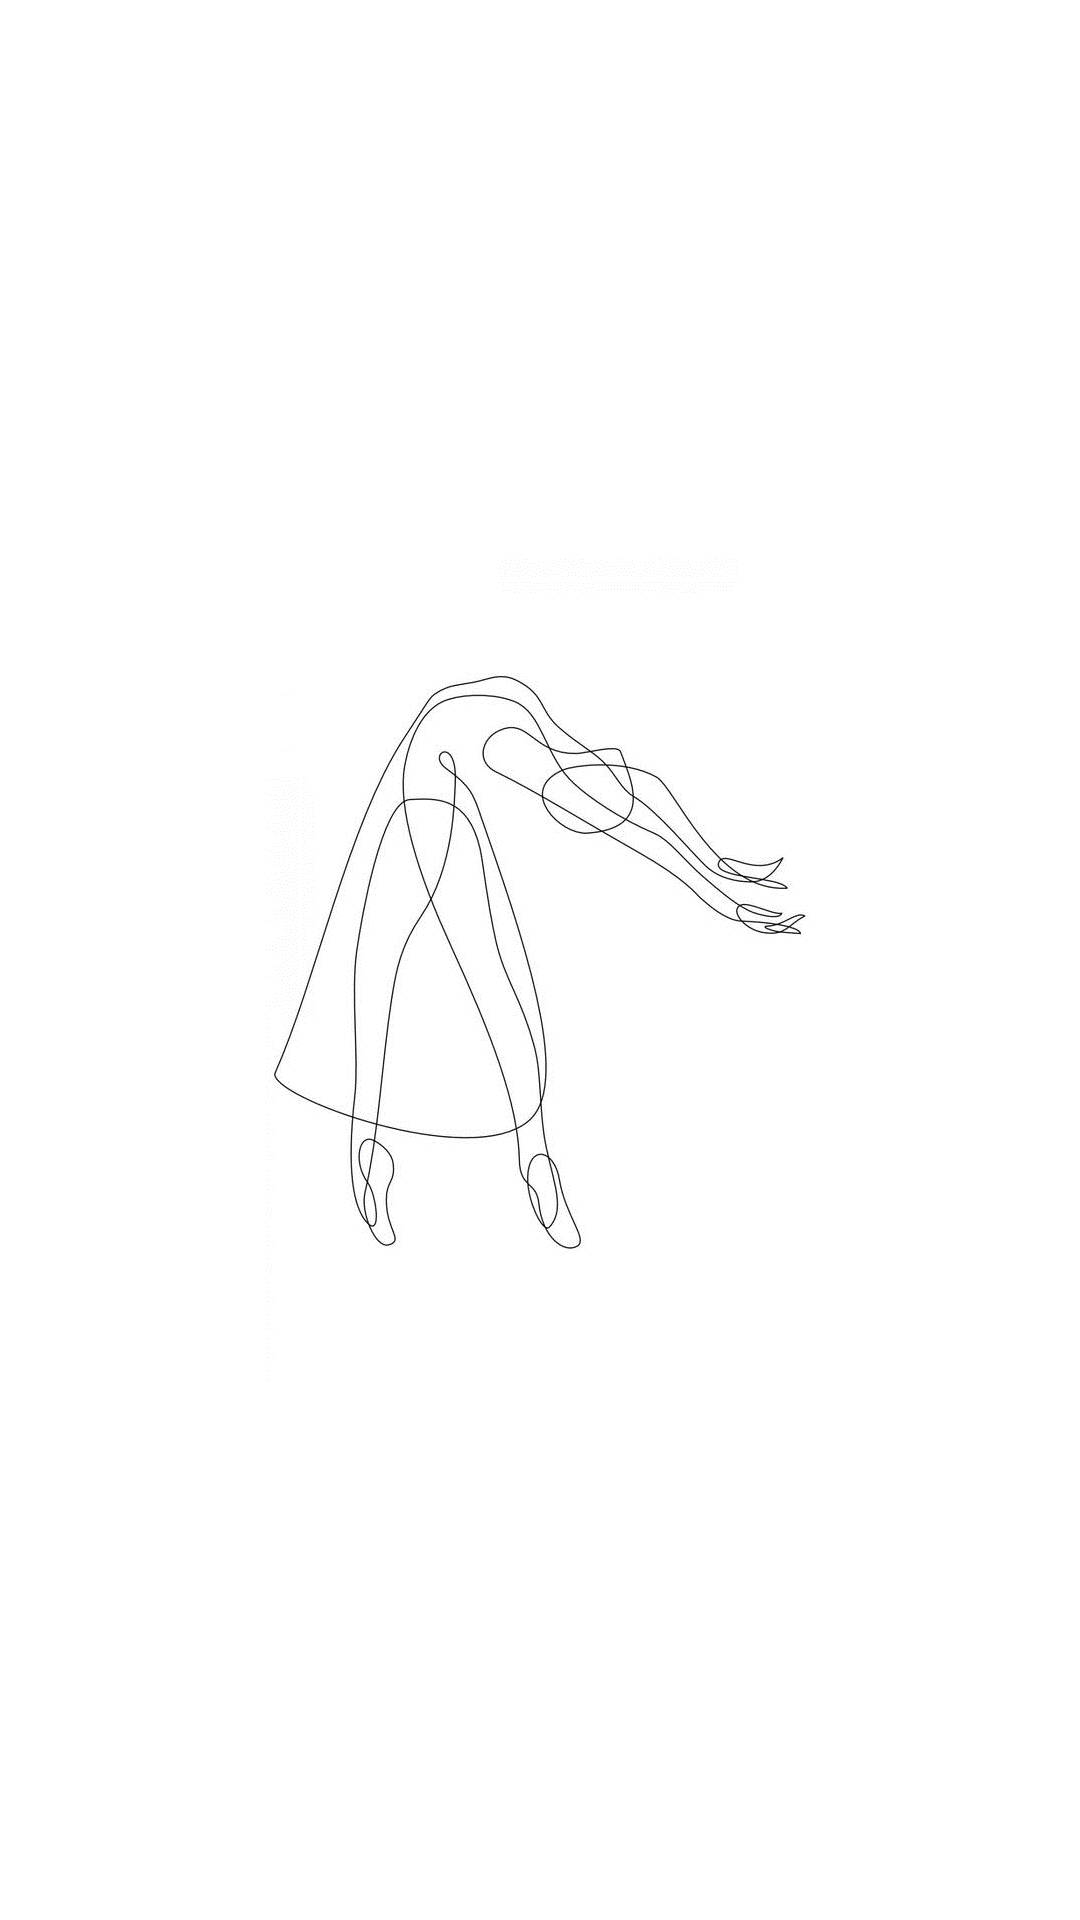 Desenhode Uma Bailarina Em Uma Única Linha. Papel de Parede